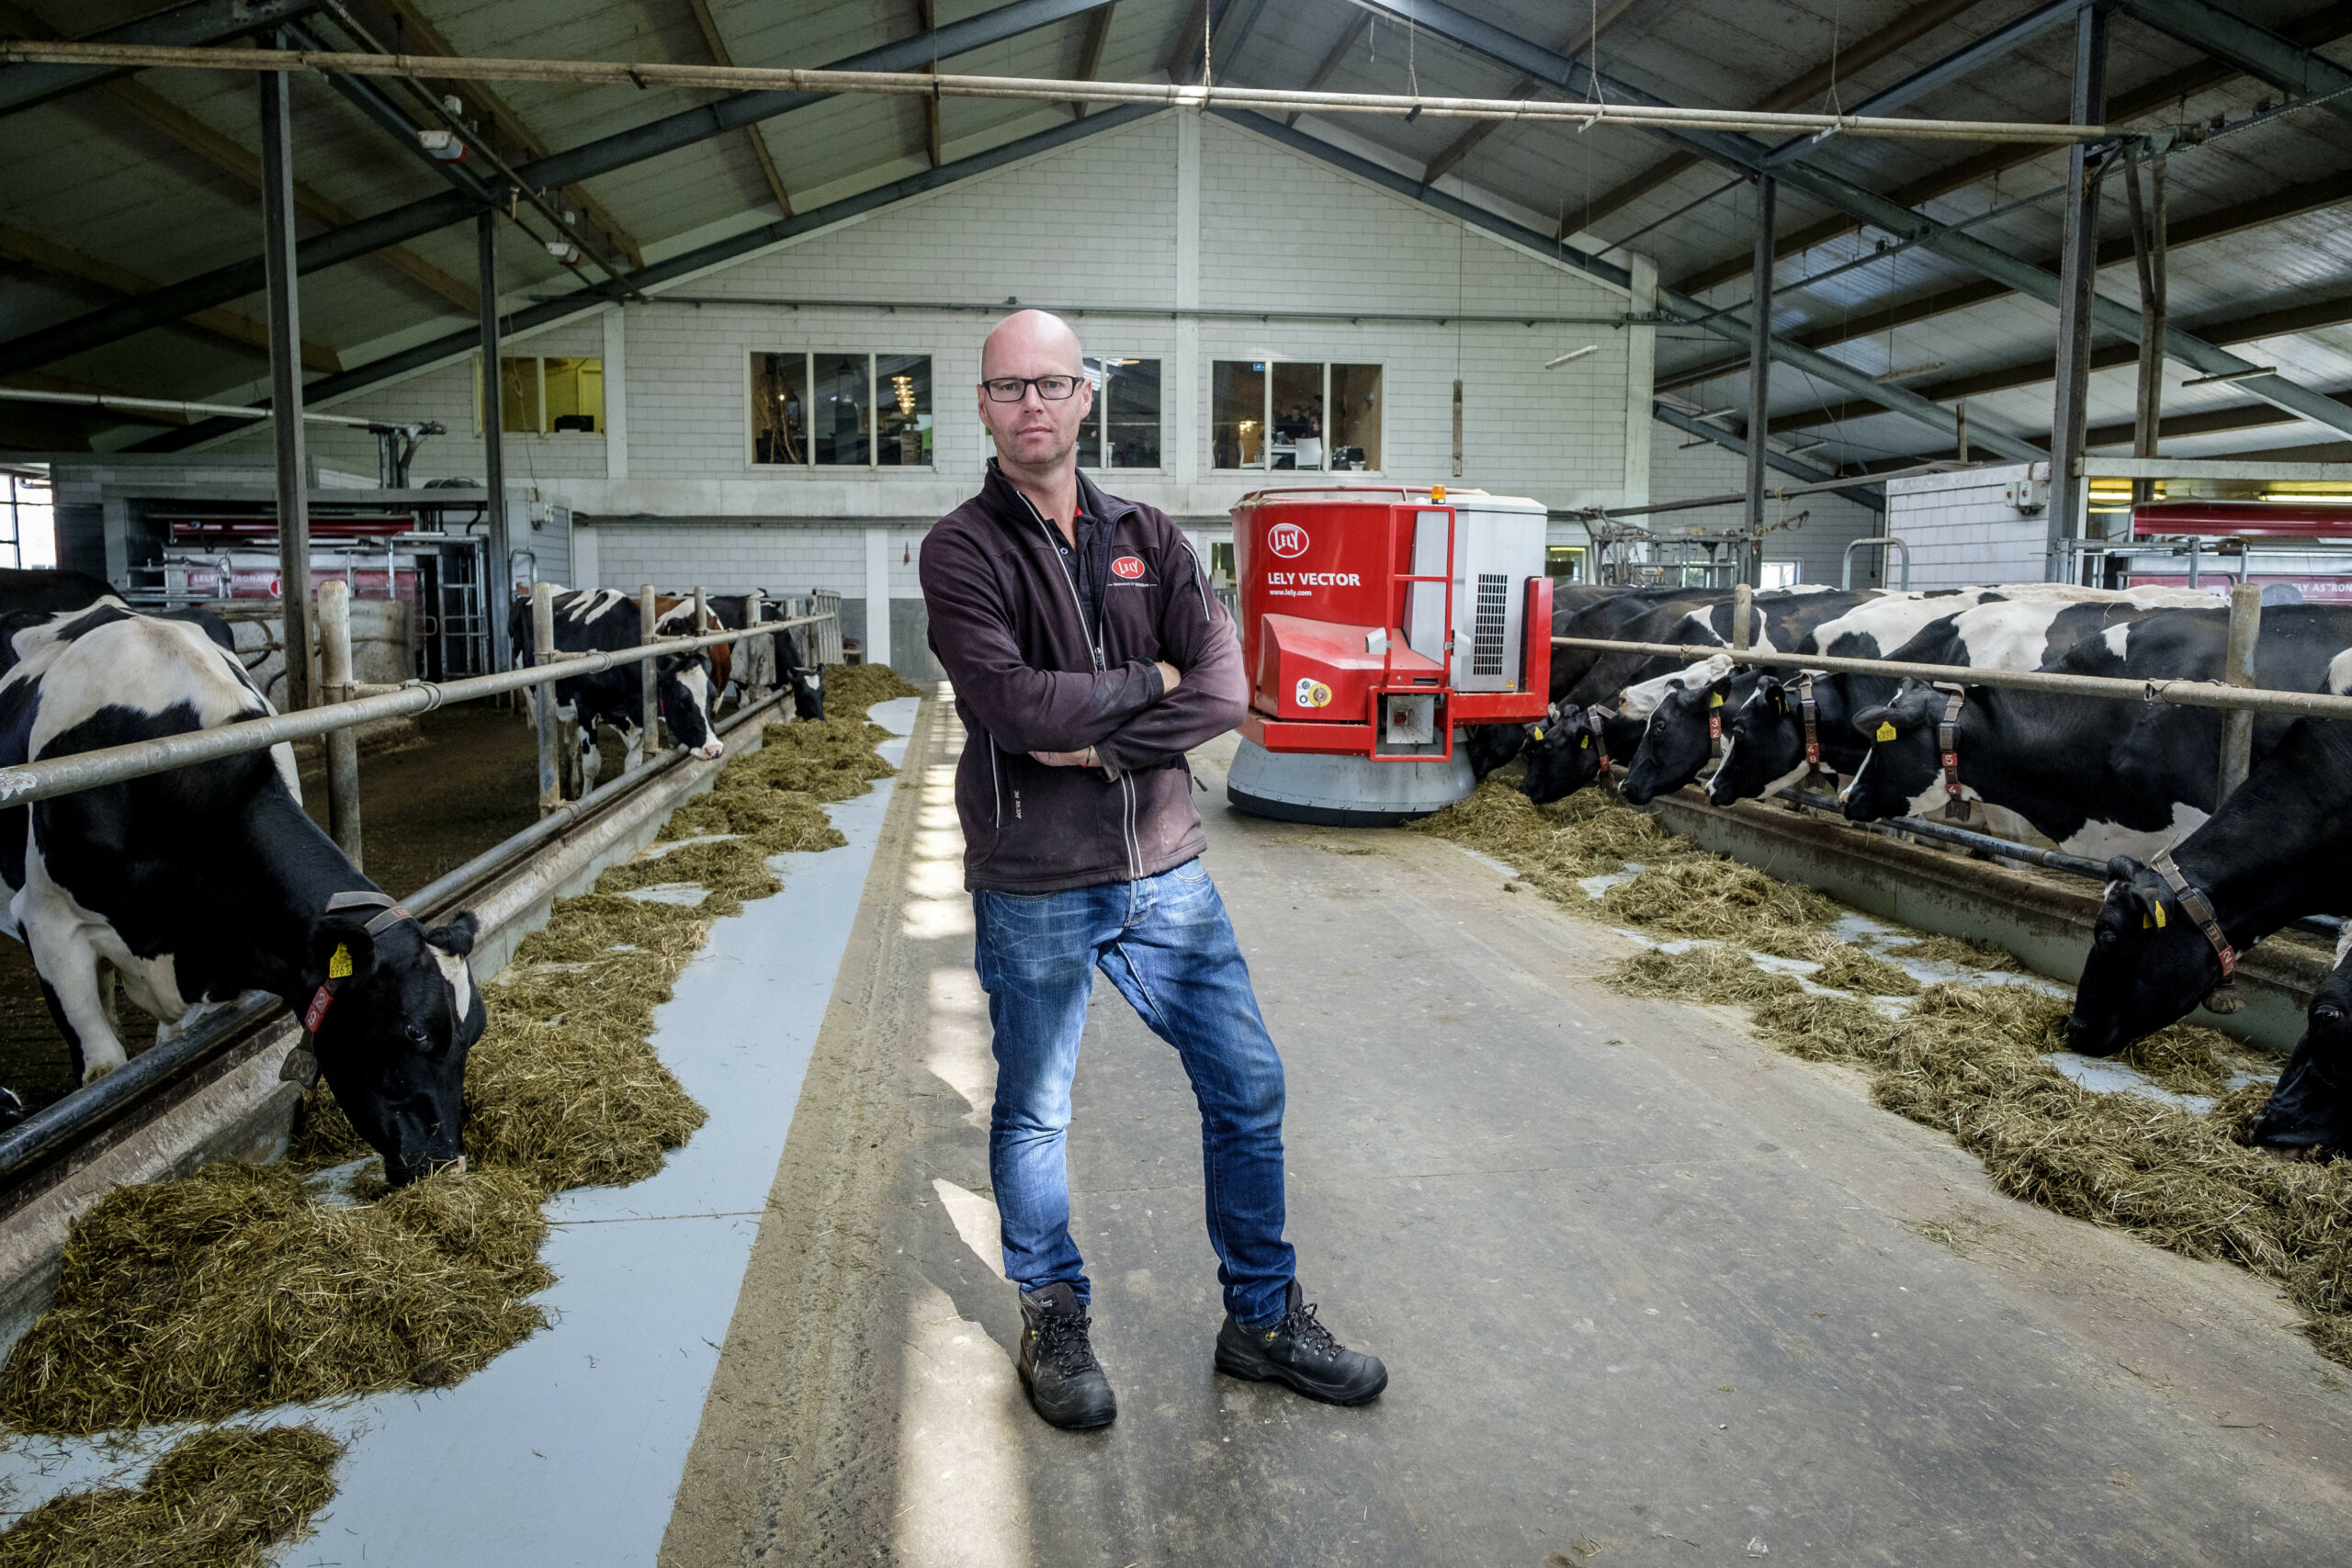 Peter Gille (44) houdt in vof met zijn vrouw Annigje (39) in Bergschenhoek (Z.-H.) op  'Het Lansingerland'  118 melkkoeien op 43 hectare grond in gebruik, waarvan 8 hectare mais en 35 hectare grasland. Het rollend jaargemiddelde is 8.800 kilo melk met 4,27% vet en 3,43% eiwit. Het bedrijf is verbreed met professionele kinderopvang, boerderijwinkel, verhuur van vergaderruimte en feest/trouwlocatie, zorg, horeca en kookworkshops. De familie Gille heeft 35 mensen (26 fte) in dienst. Strategie: streven naar verdere verbreding van de onderneming met uitbreiding van het restaurant, een groepsaccommodatie, een camping en meer plaatsen voor dagbesteding op een tweede locatie.